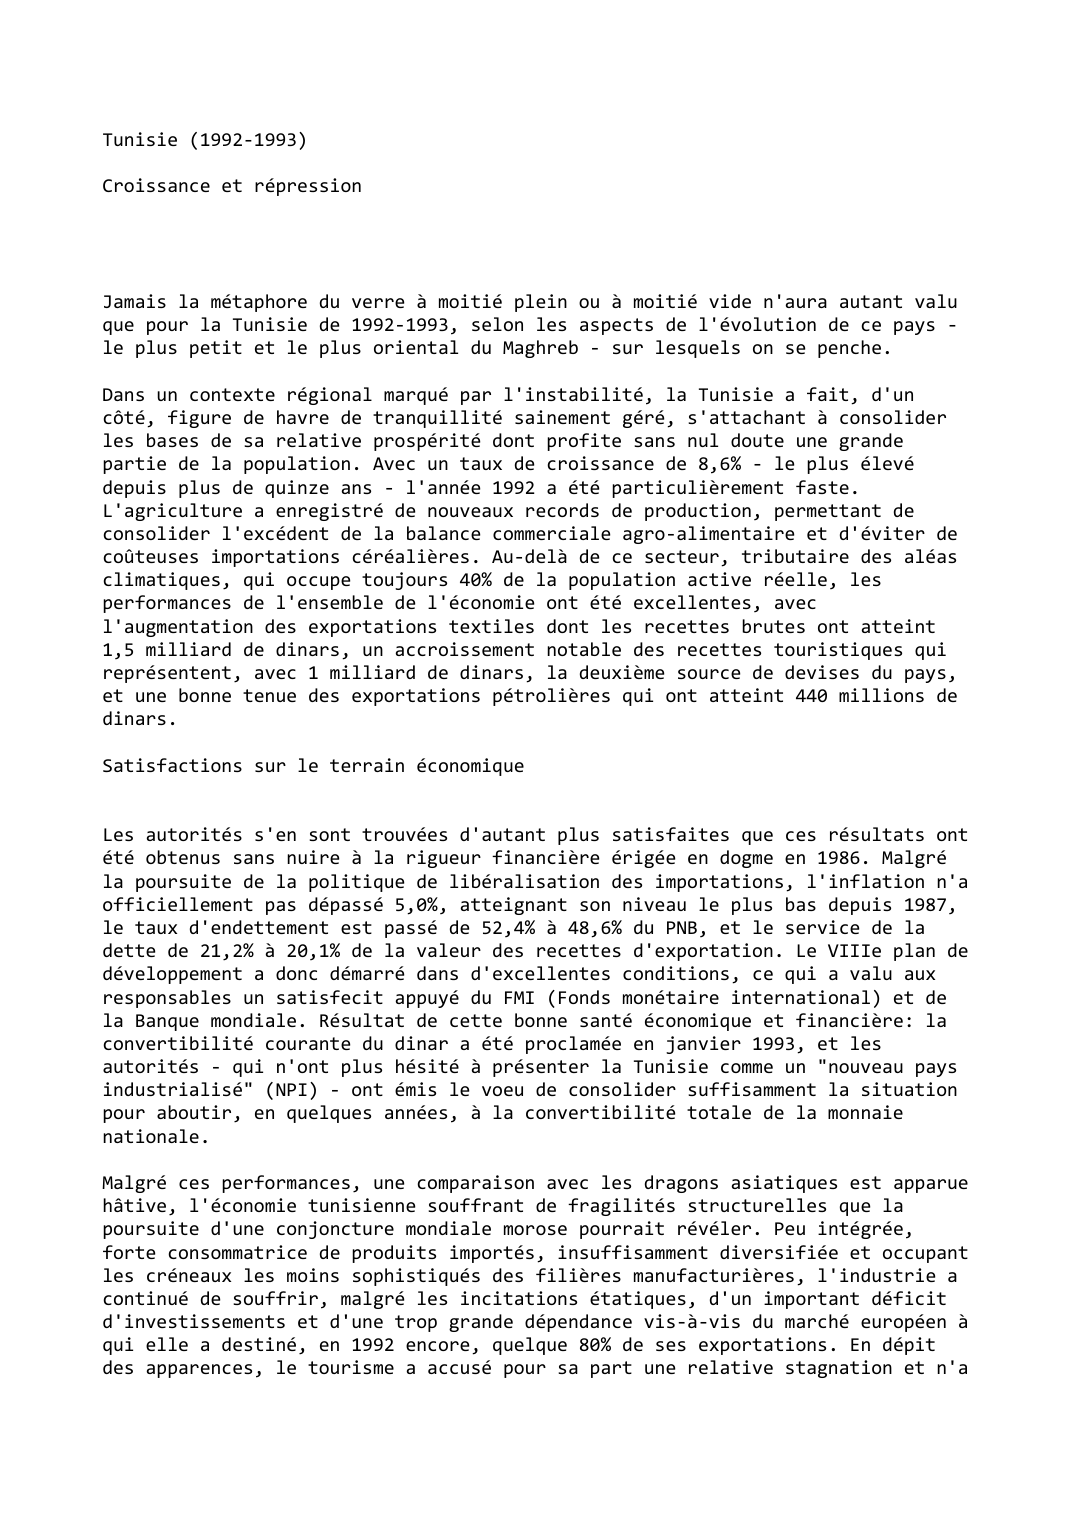 Prévisualisation du document Tunisie (1992-1993)

Croissance et répression